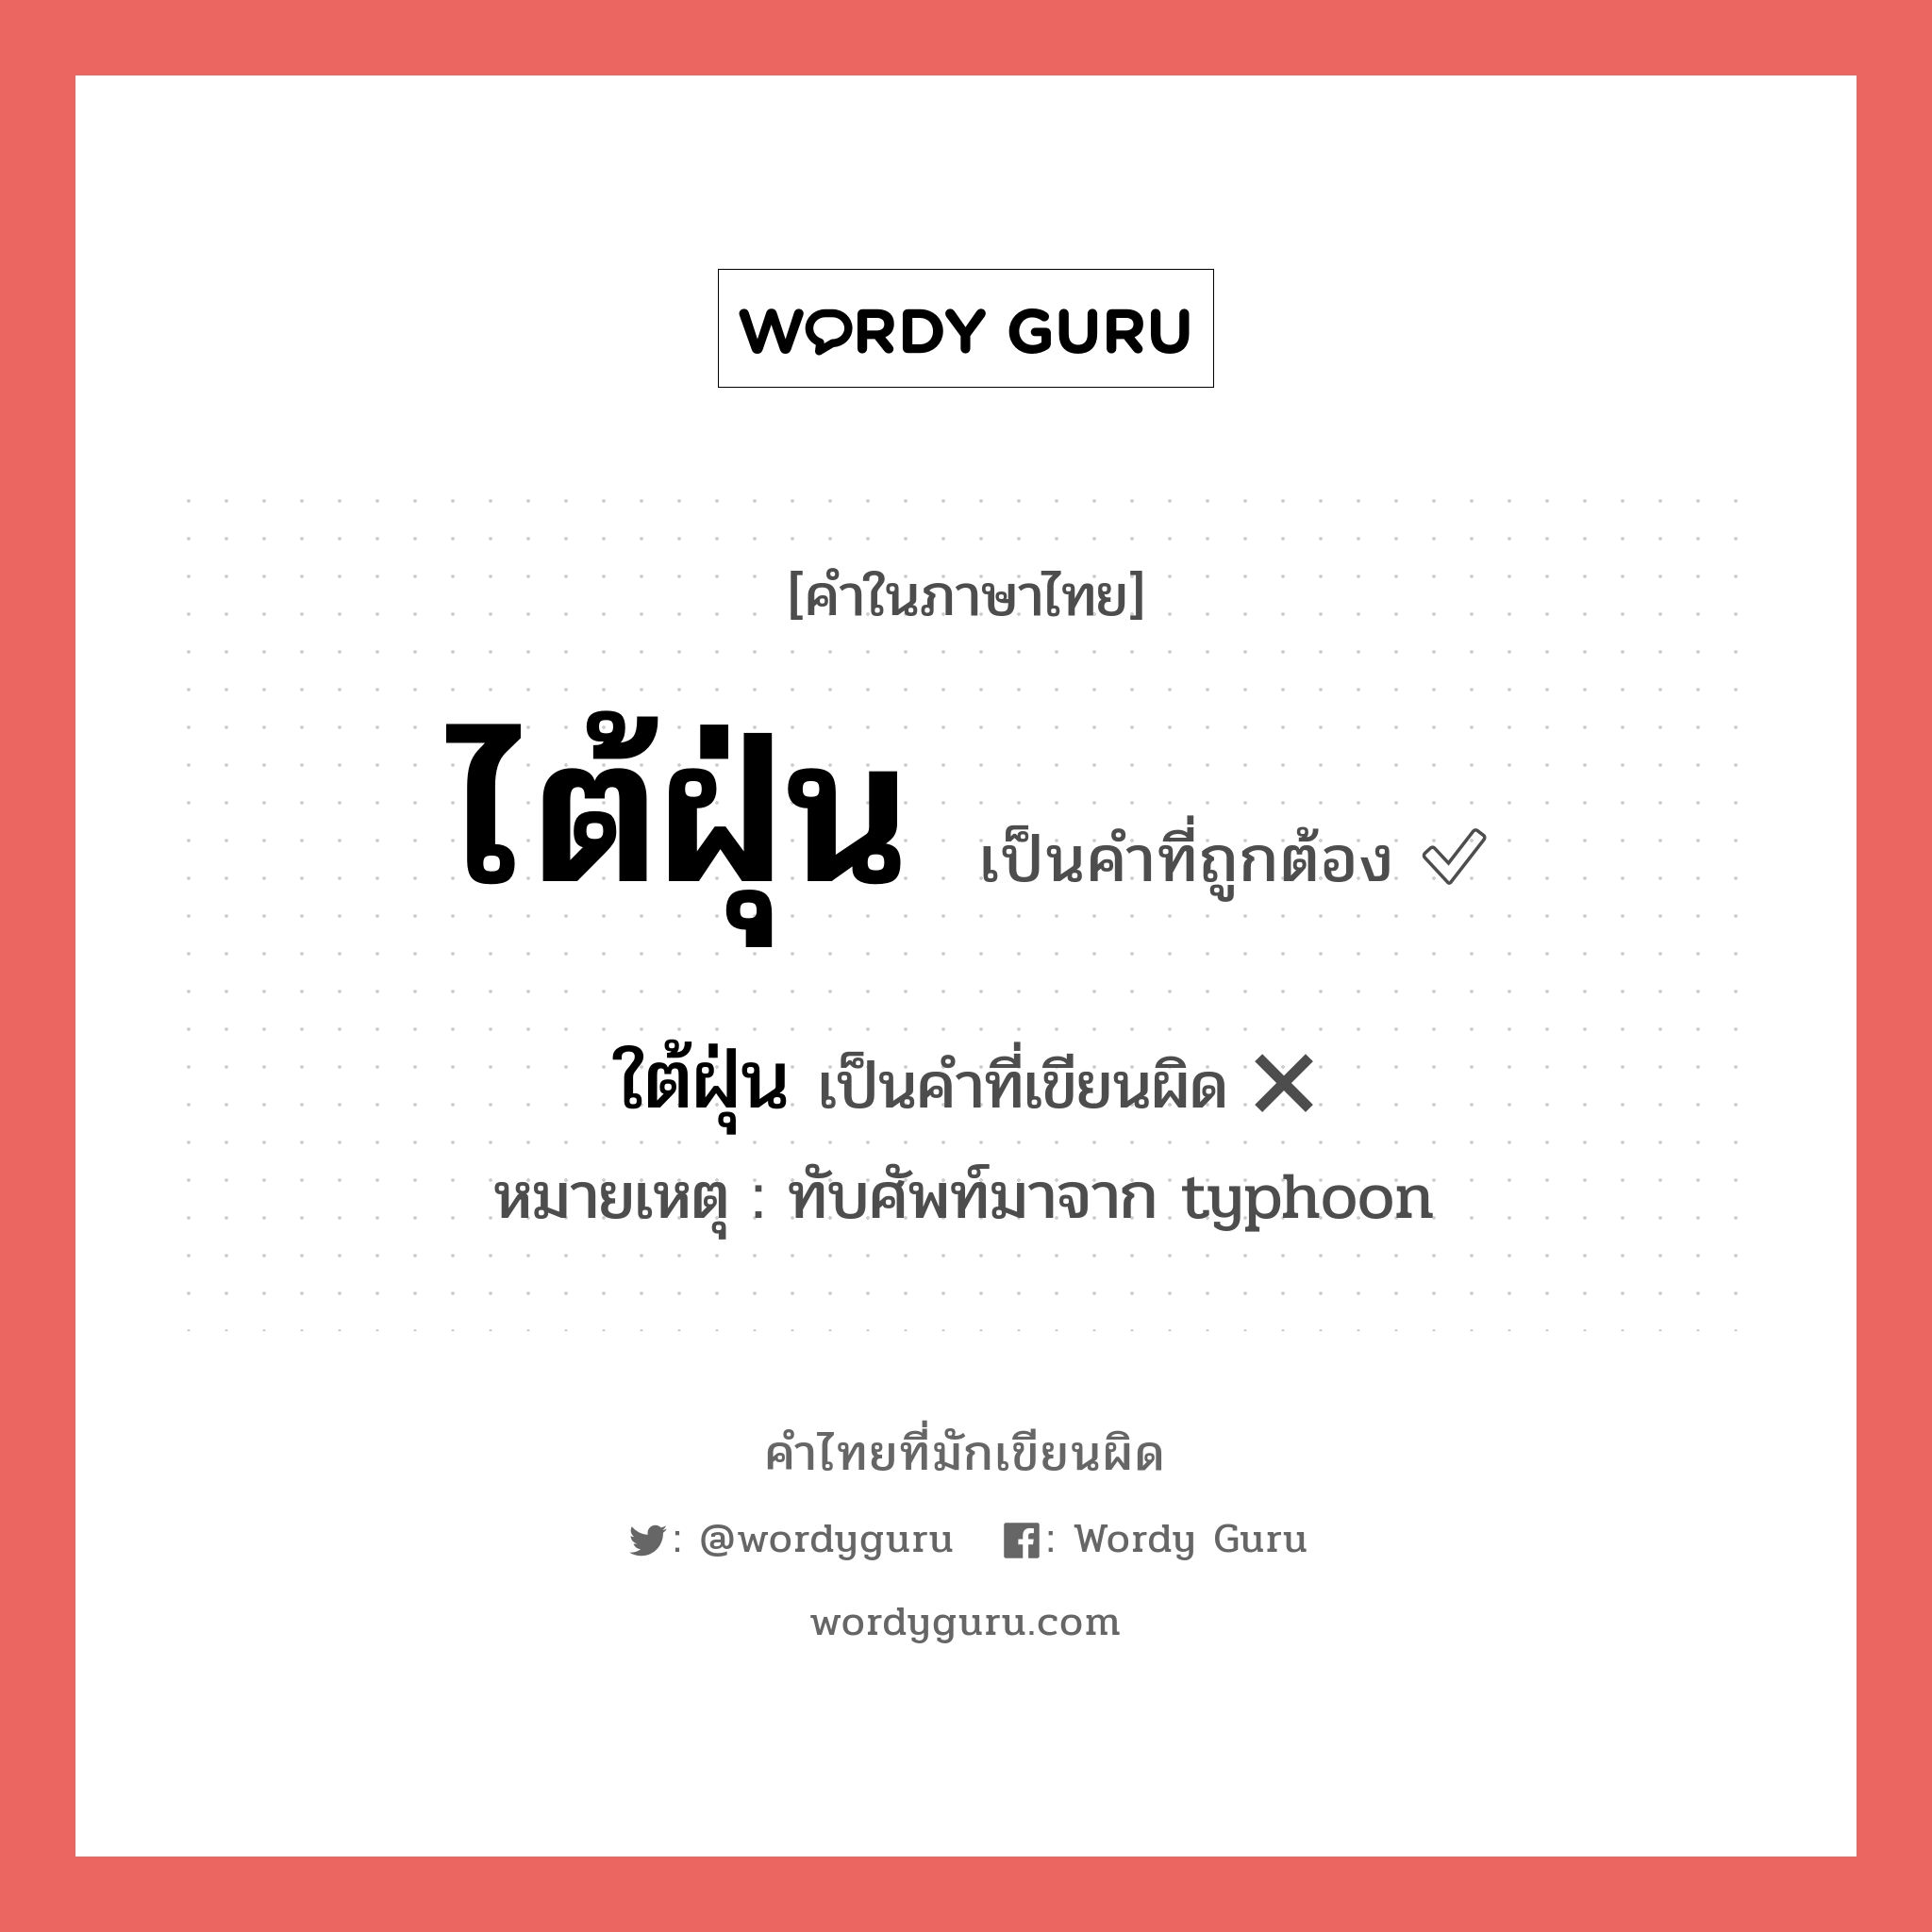 ใต้ฝุ่น หรือ ไต้ฝุ่น คำไหนเขียนถูก?, คำในภาษาไทยที่มักเขียนผิด ใต้ฝุ่น คำที่ผิด ❌ ไต้ฝุ่น หมายเหตุ ทับศัพท์มาจาก typhoon